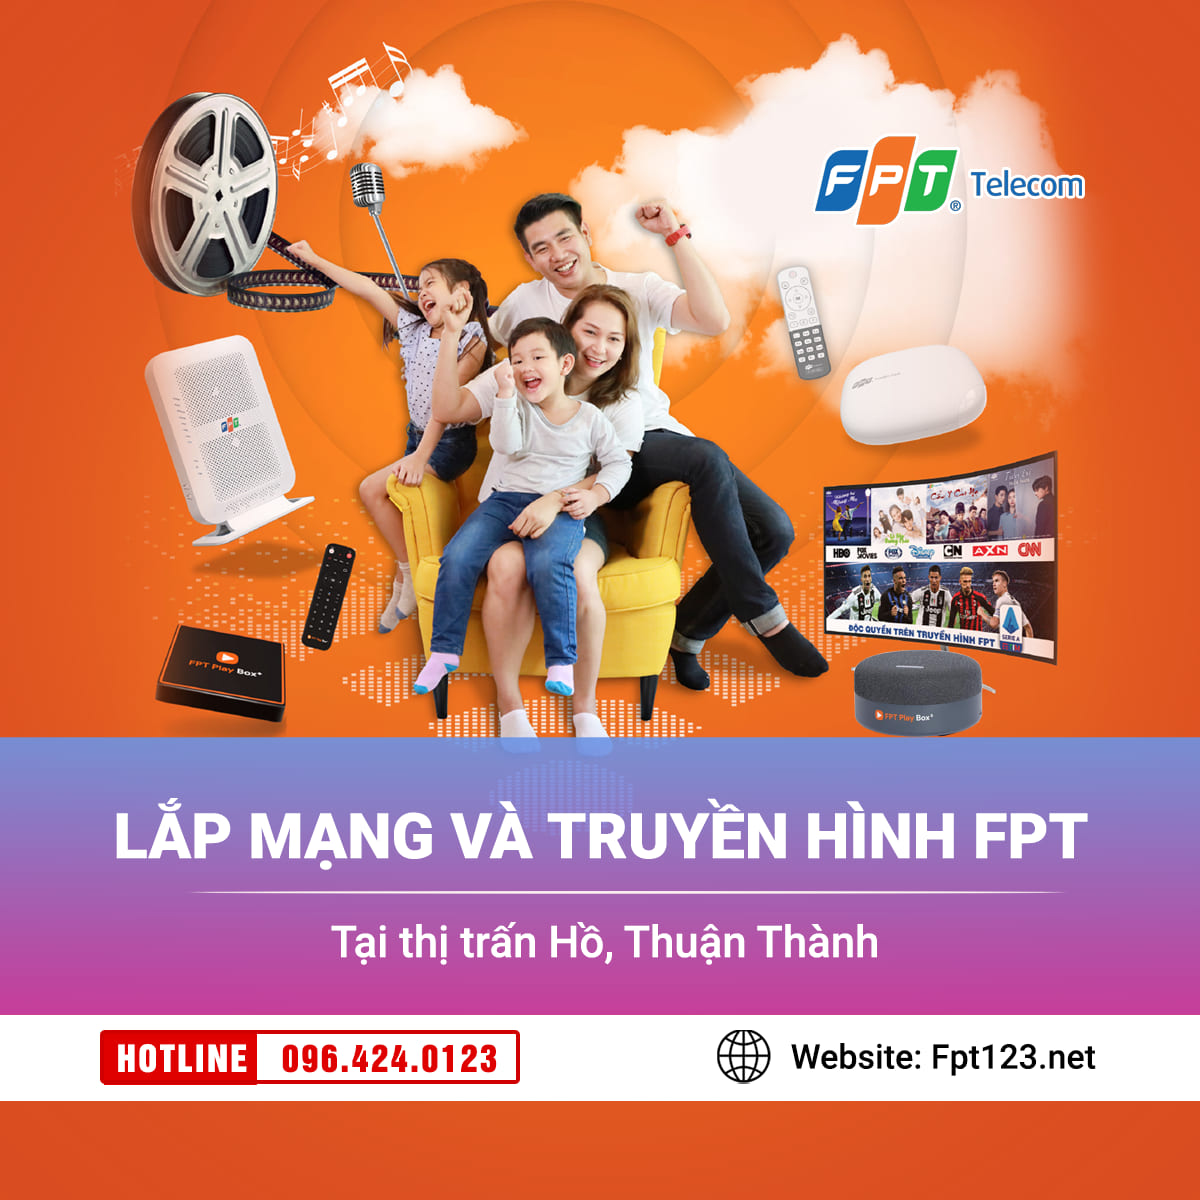 Lắp mạng và truyền hình FPT tại thị trấn Hồ, Thuận Thành